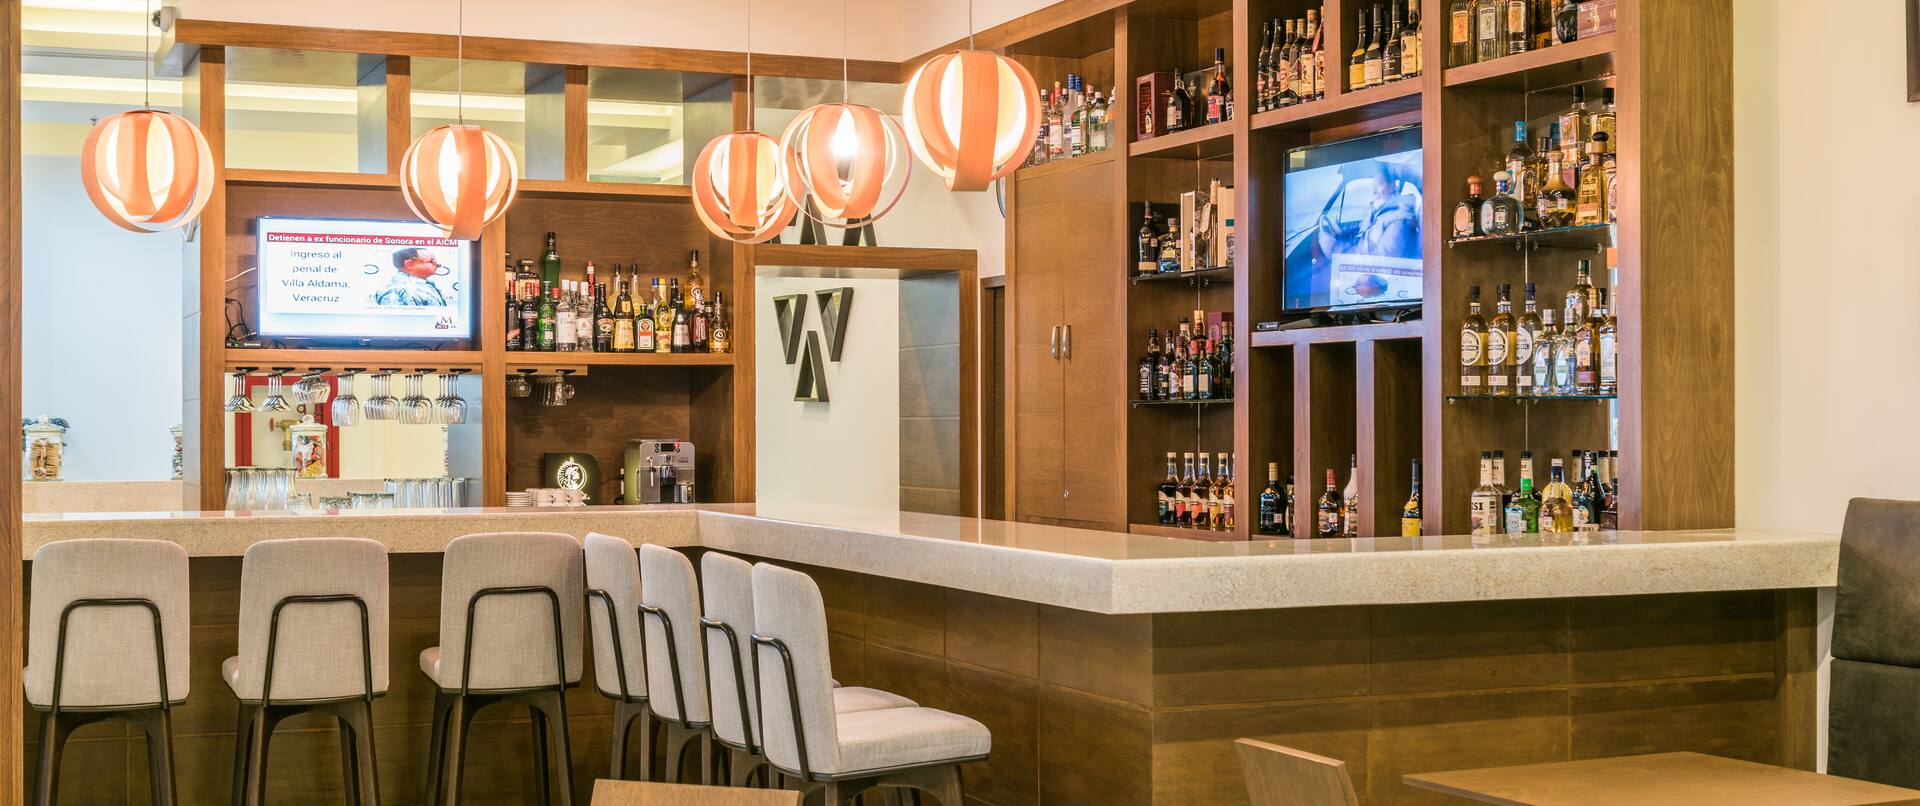 Televisores y sillas junto a la barra en un bar bien surtido con mesas, sillas y asientos en cubículos en restaurante